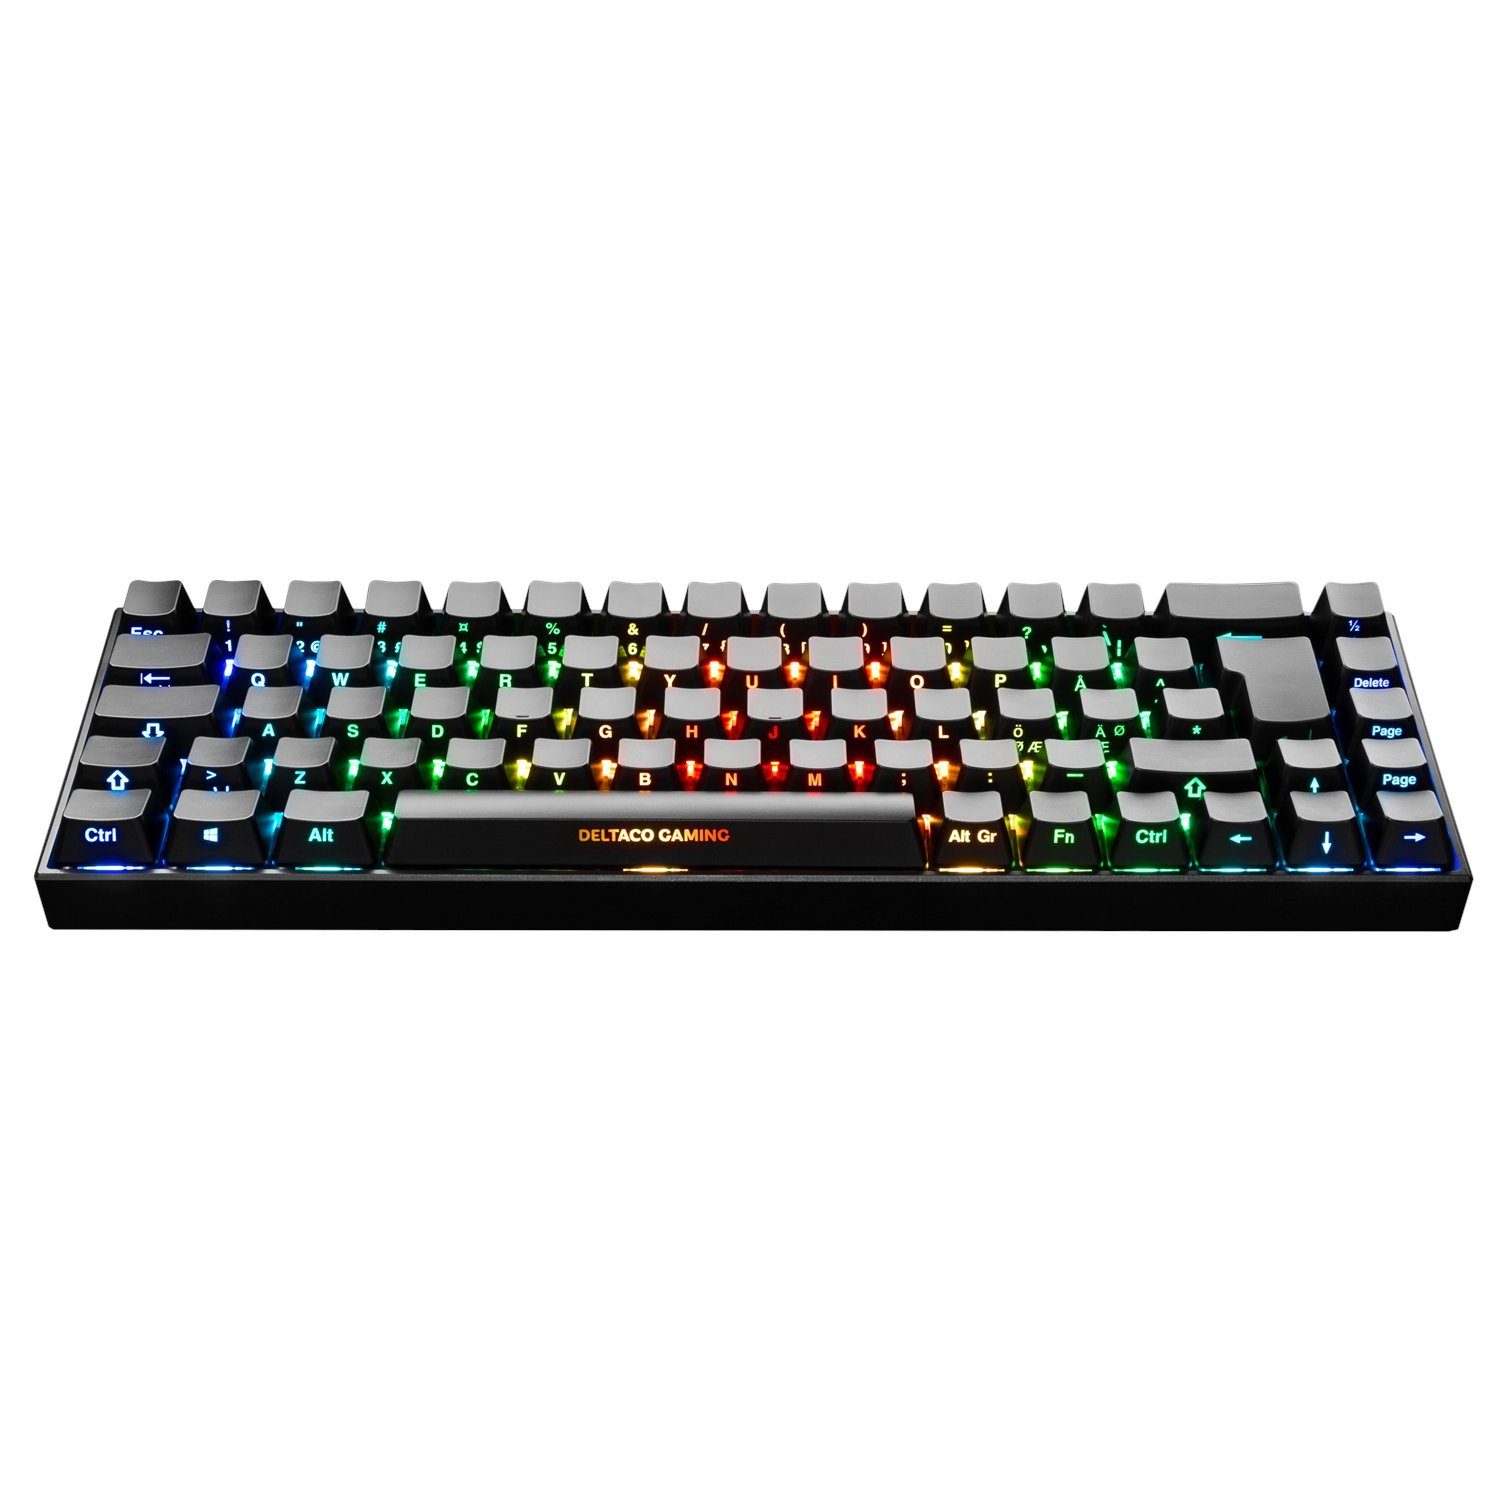 DELTACO DK440R Gaming-Tastatur (inkl. 5 Jahre Herstellergarantie)